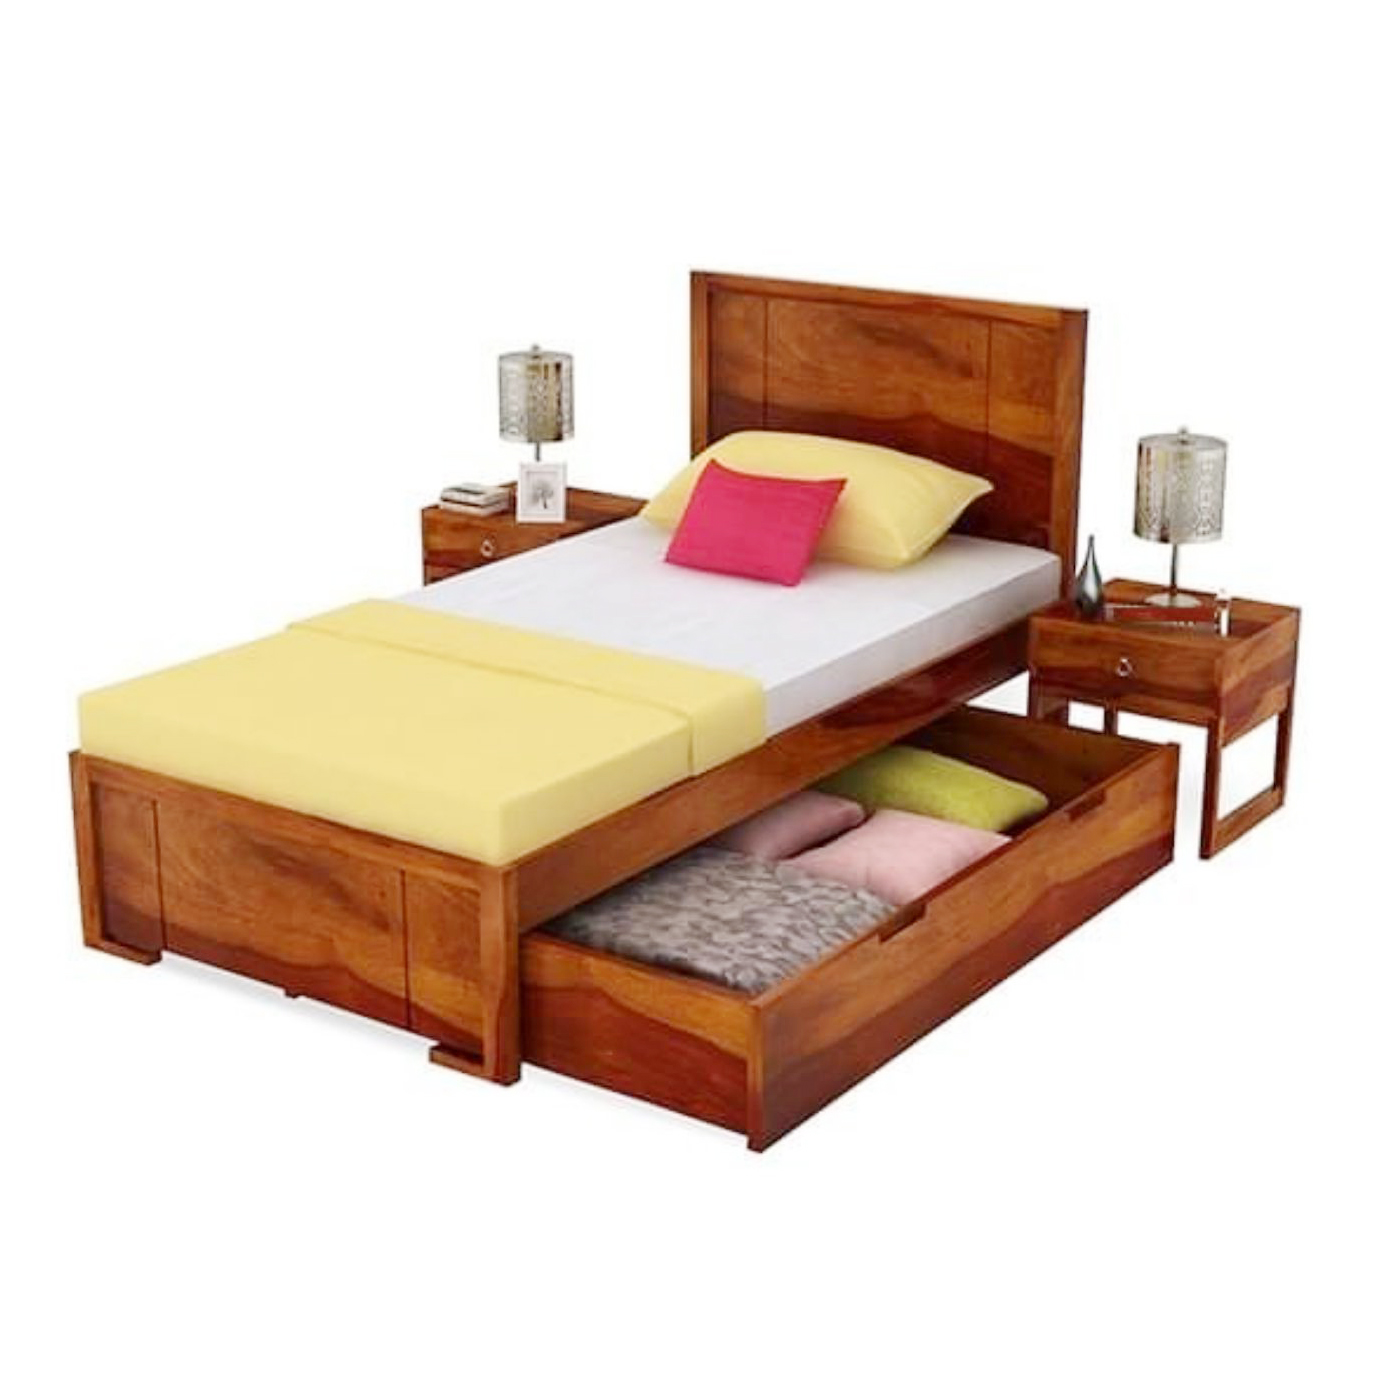 Single Bed With storage honey finish